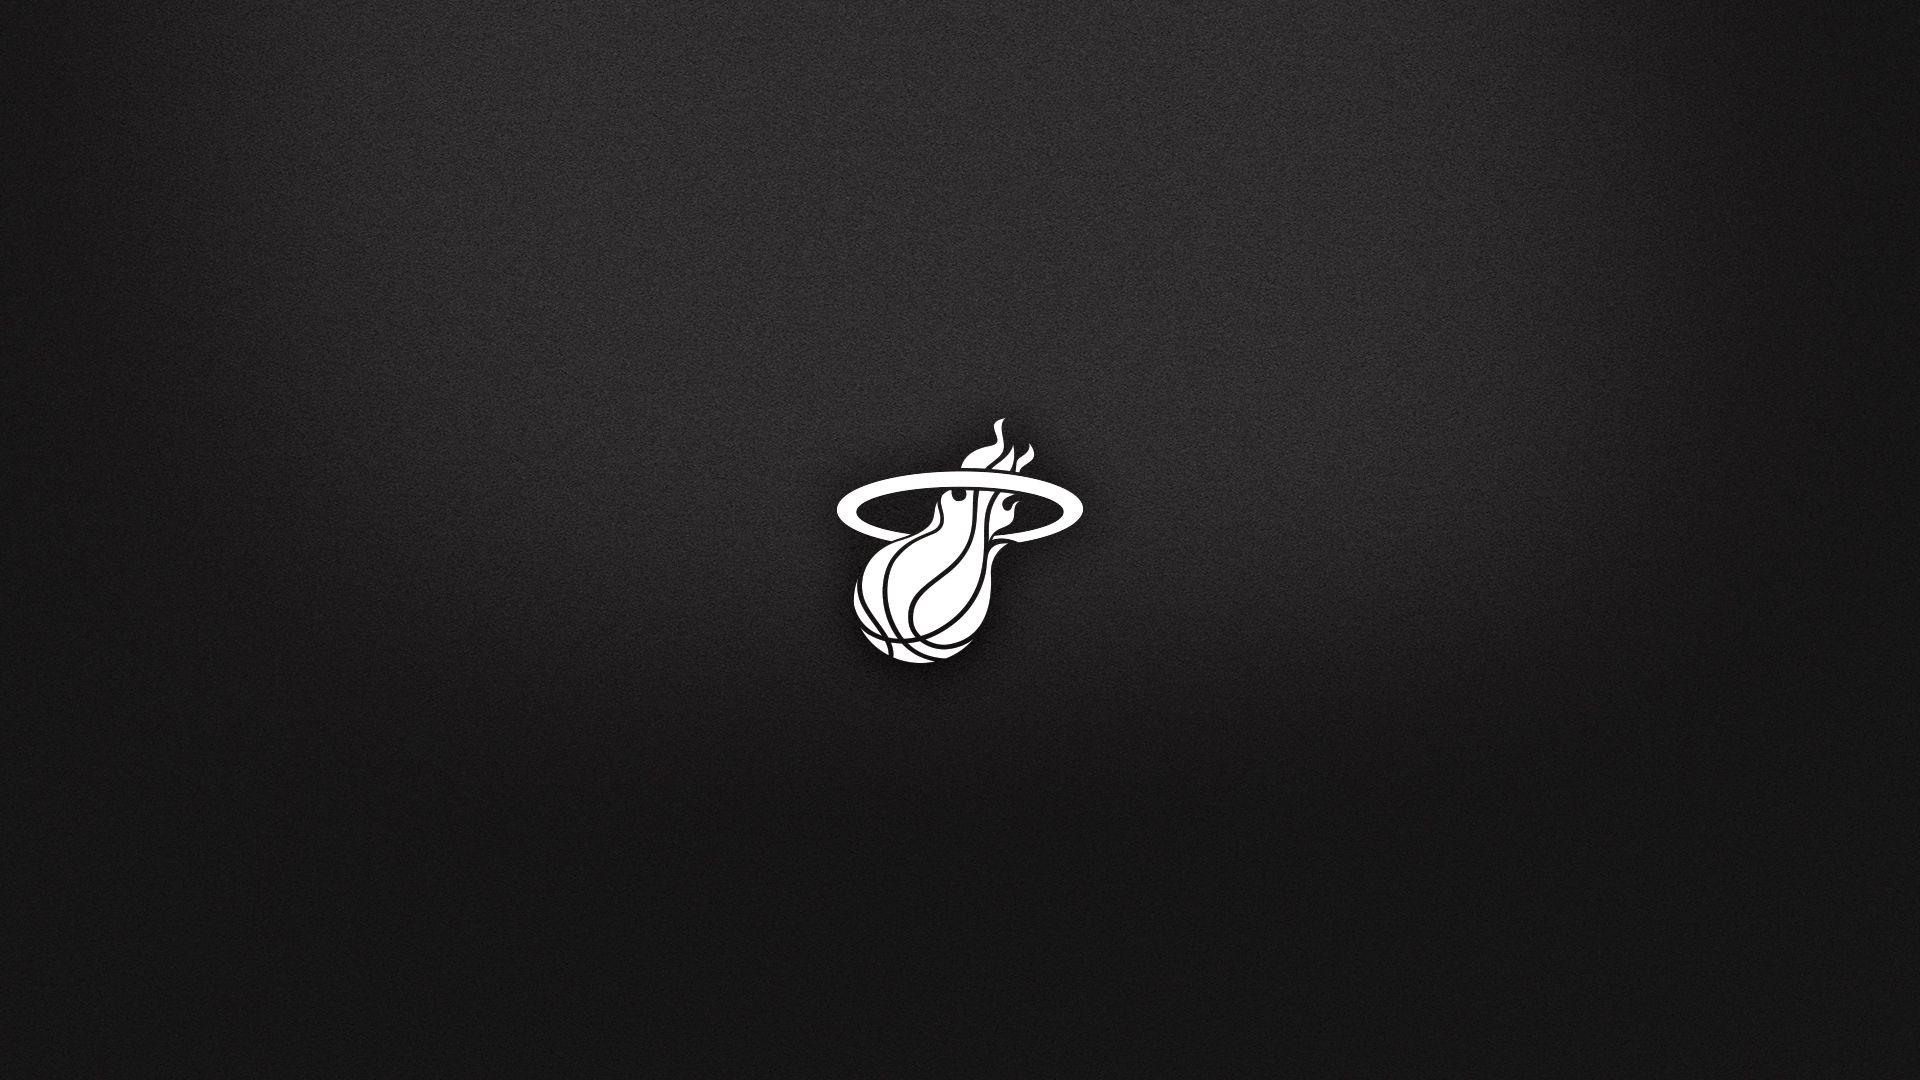 Black and White Miami Heat Logo - 热火新赛季壁纸分享 | Miami Heat